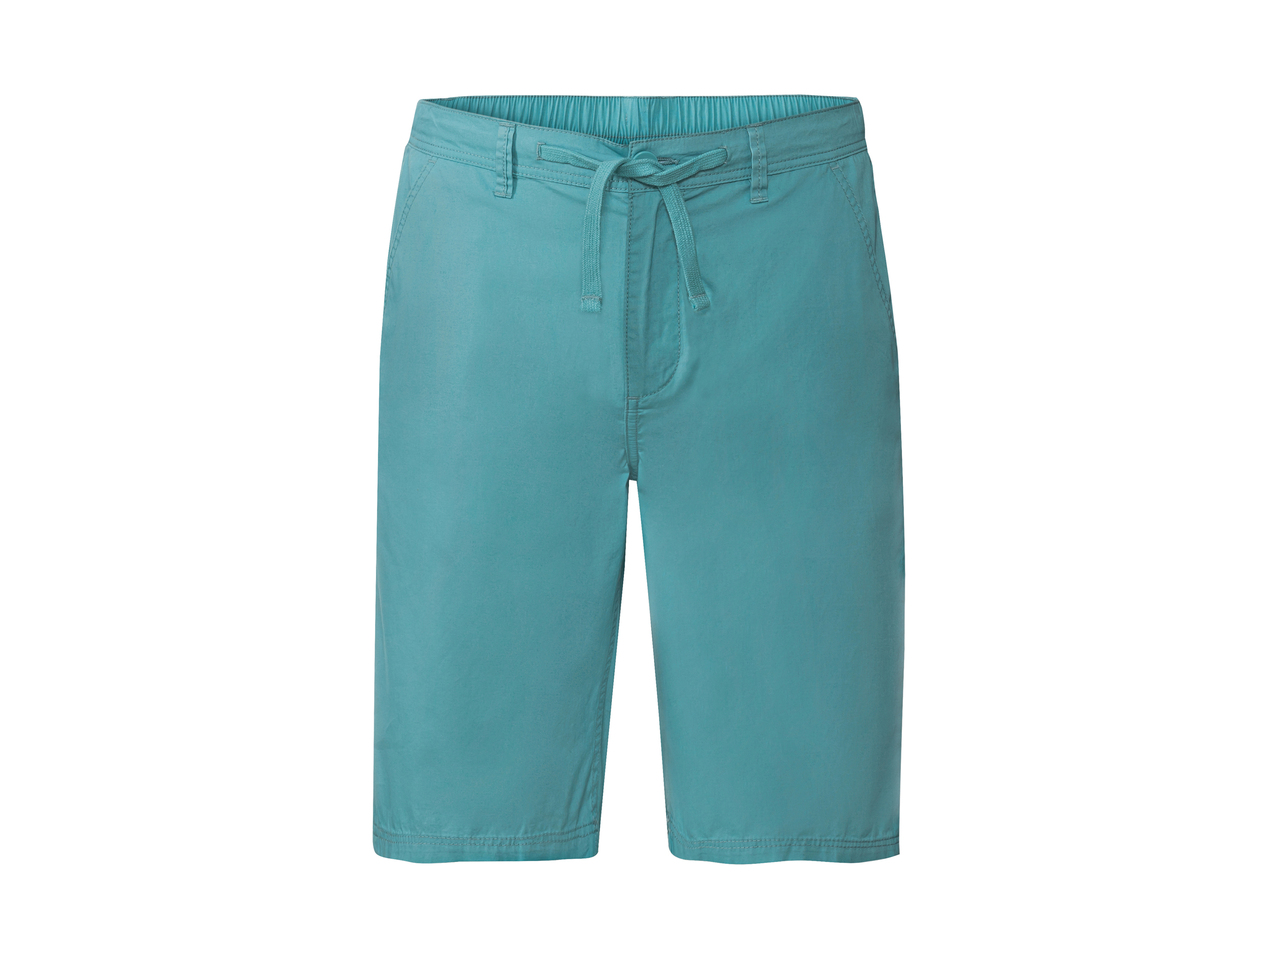 Shorts da uomo , prezzo 9.99 EUR  
Shorts da uomo  Misure: 48-58  
-  Puro cotone